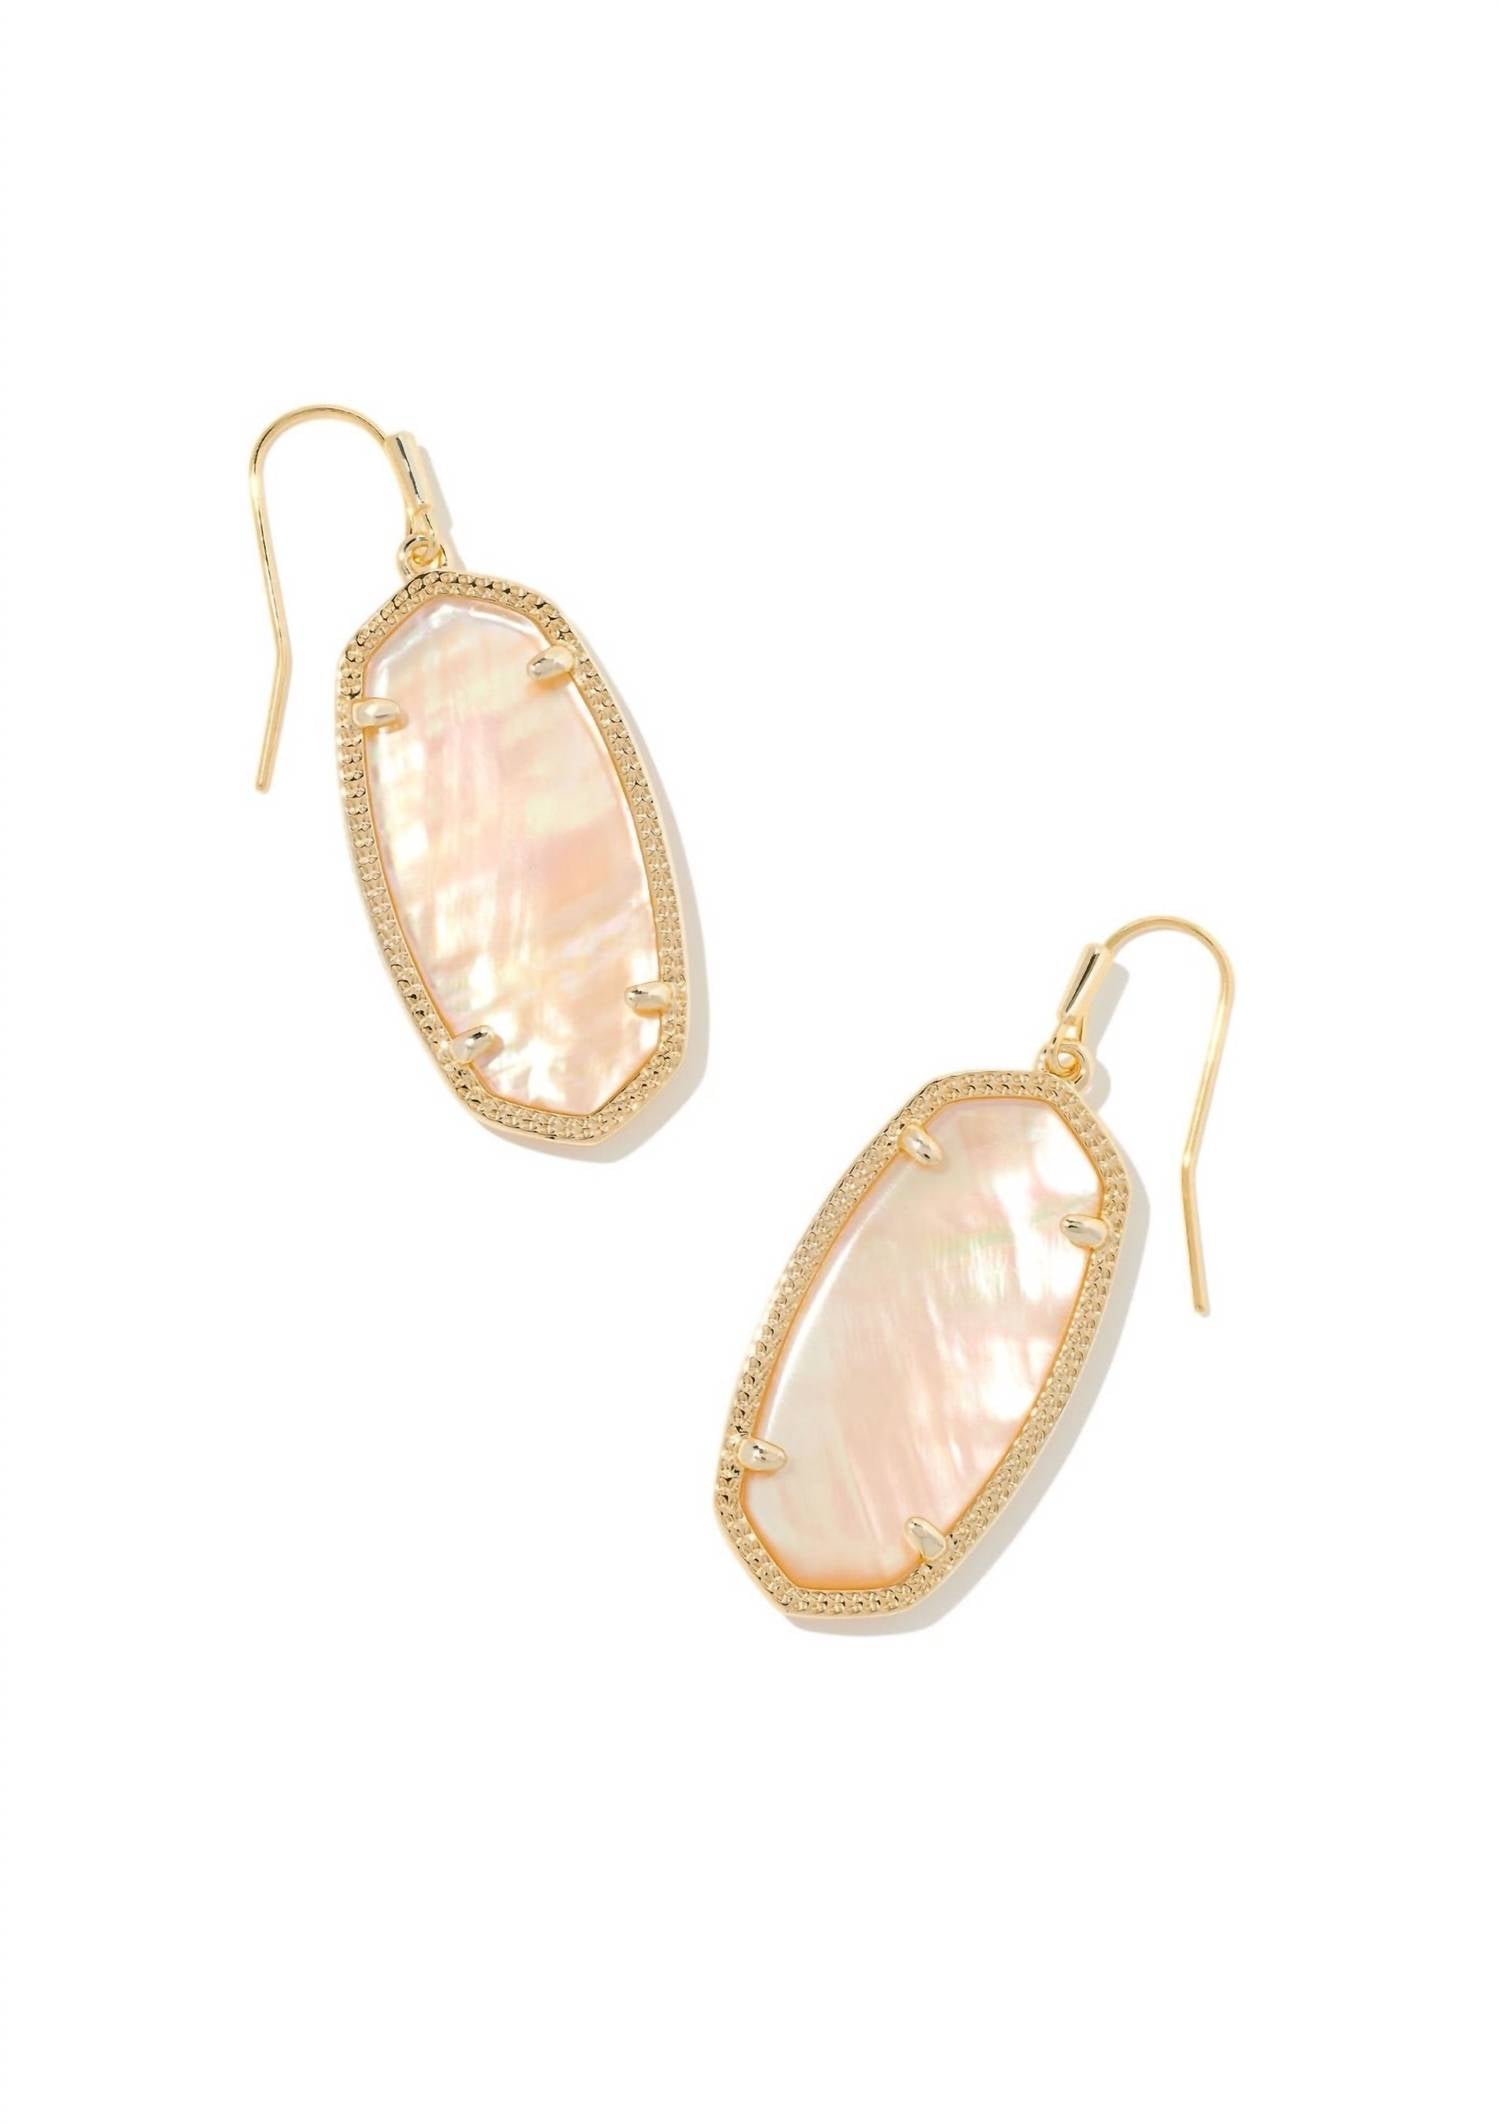 KENDRA SCOTT Elle Earrings in Gold/Golden Abalone